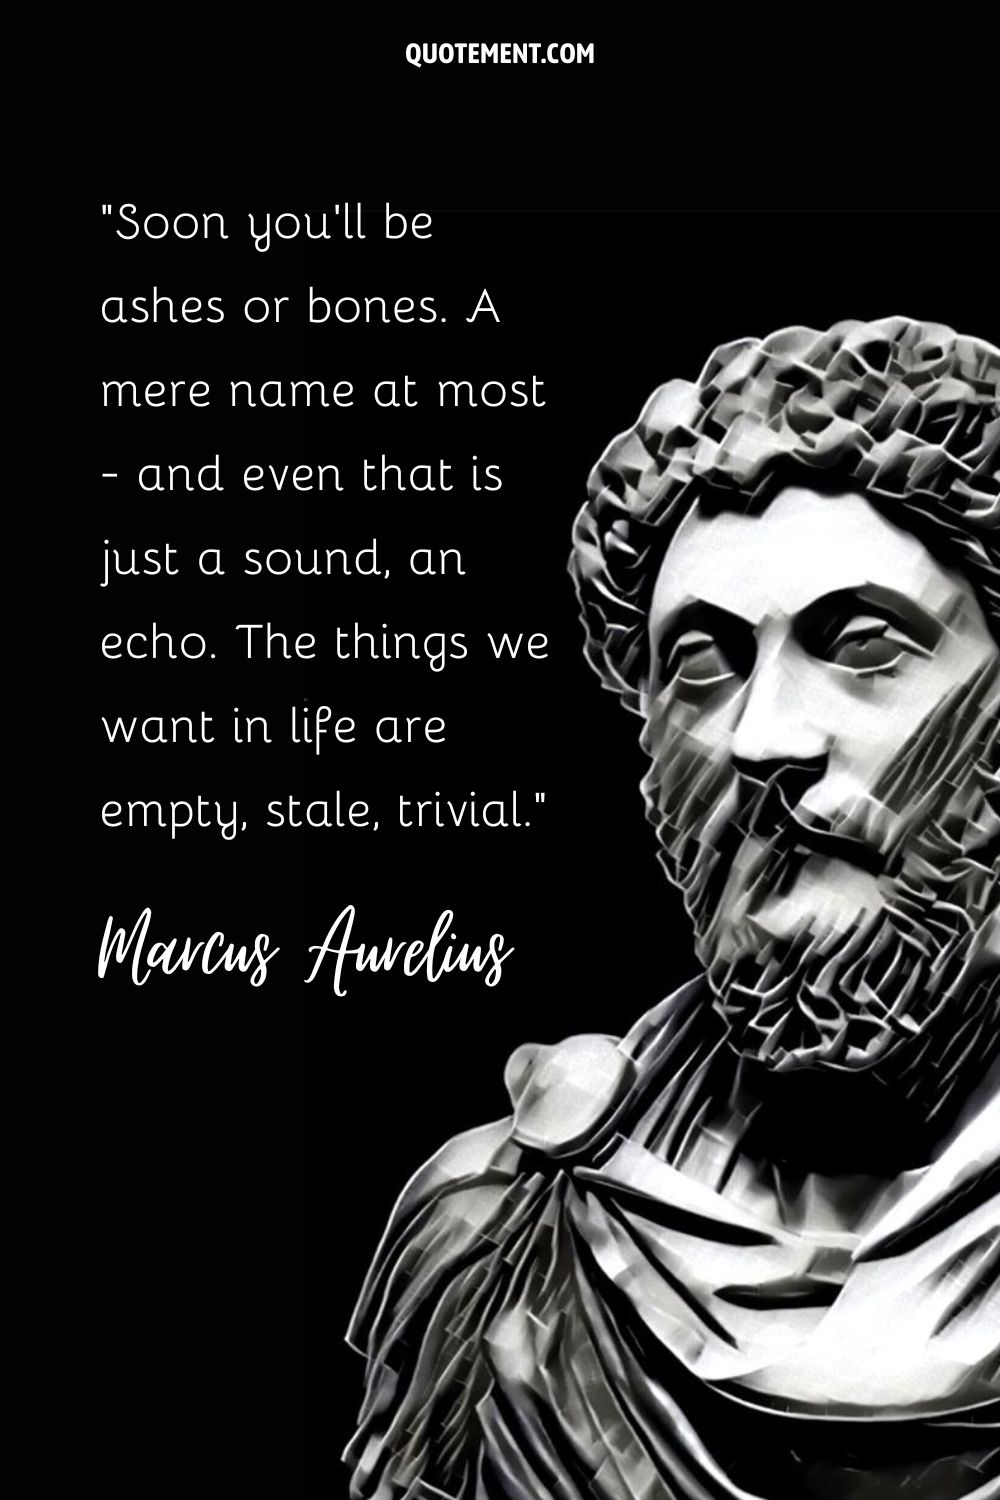 Graceful depiction of Roman leader Marcus Aurelius.
